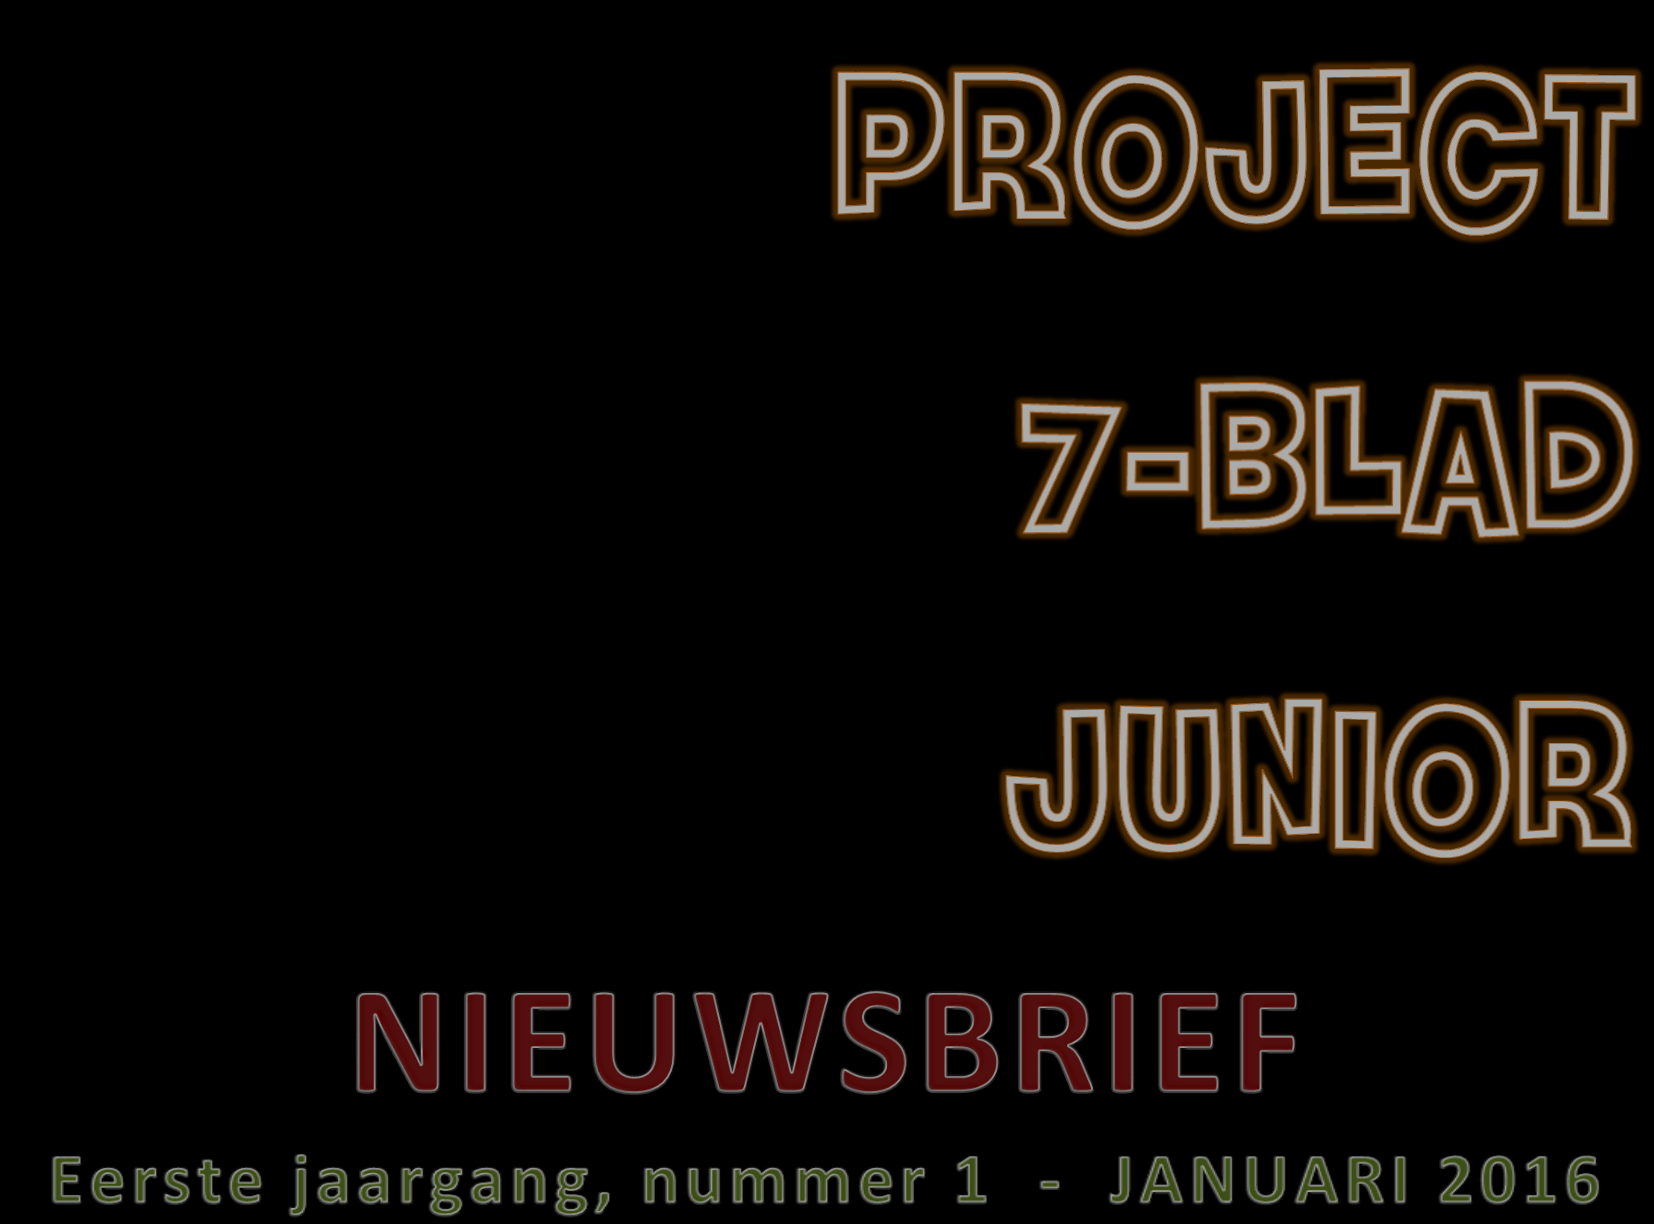 allereerste Nieuwsbrief met de naam Project7-blad Junior onder ogen.